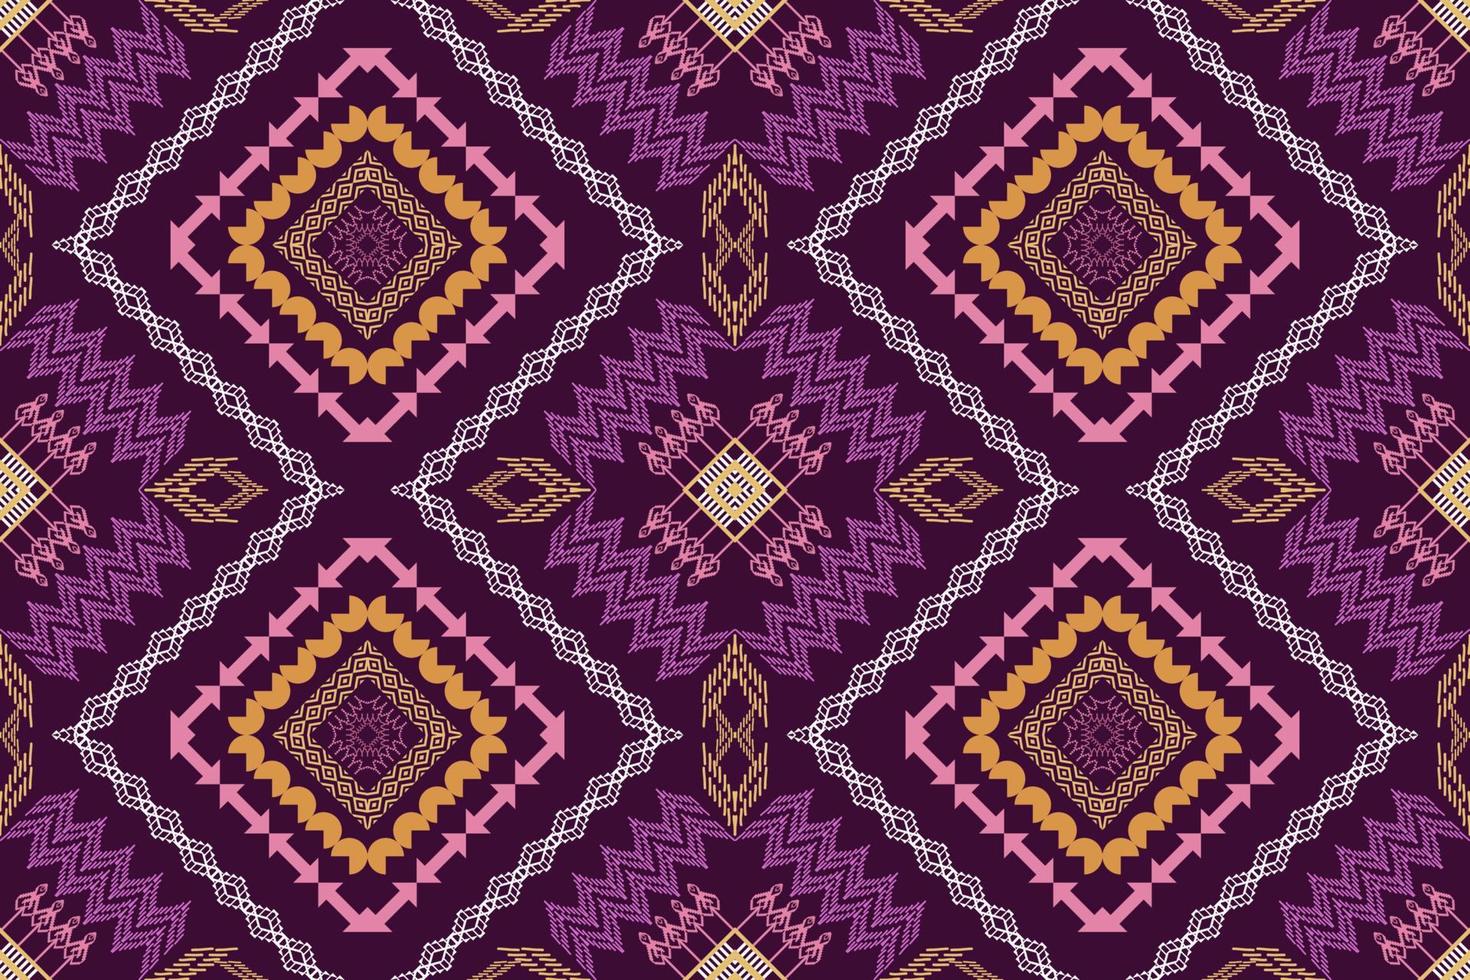 padrão tradicional oriental étnico geométrico figura estilo de bordado tribal design para papel de parede, roupas, embrulho, tecido, ilustração vetorial vetor